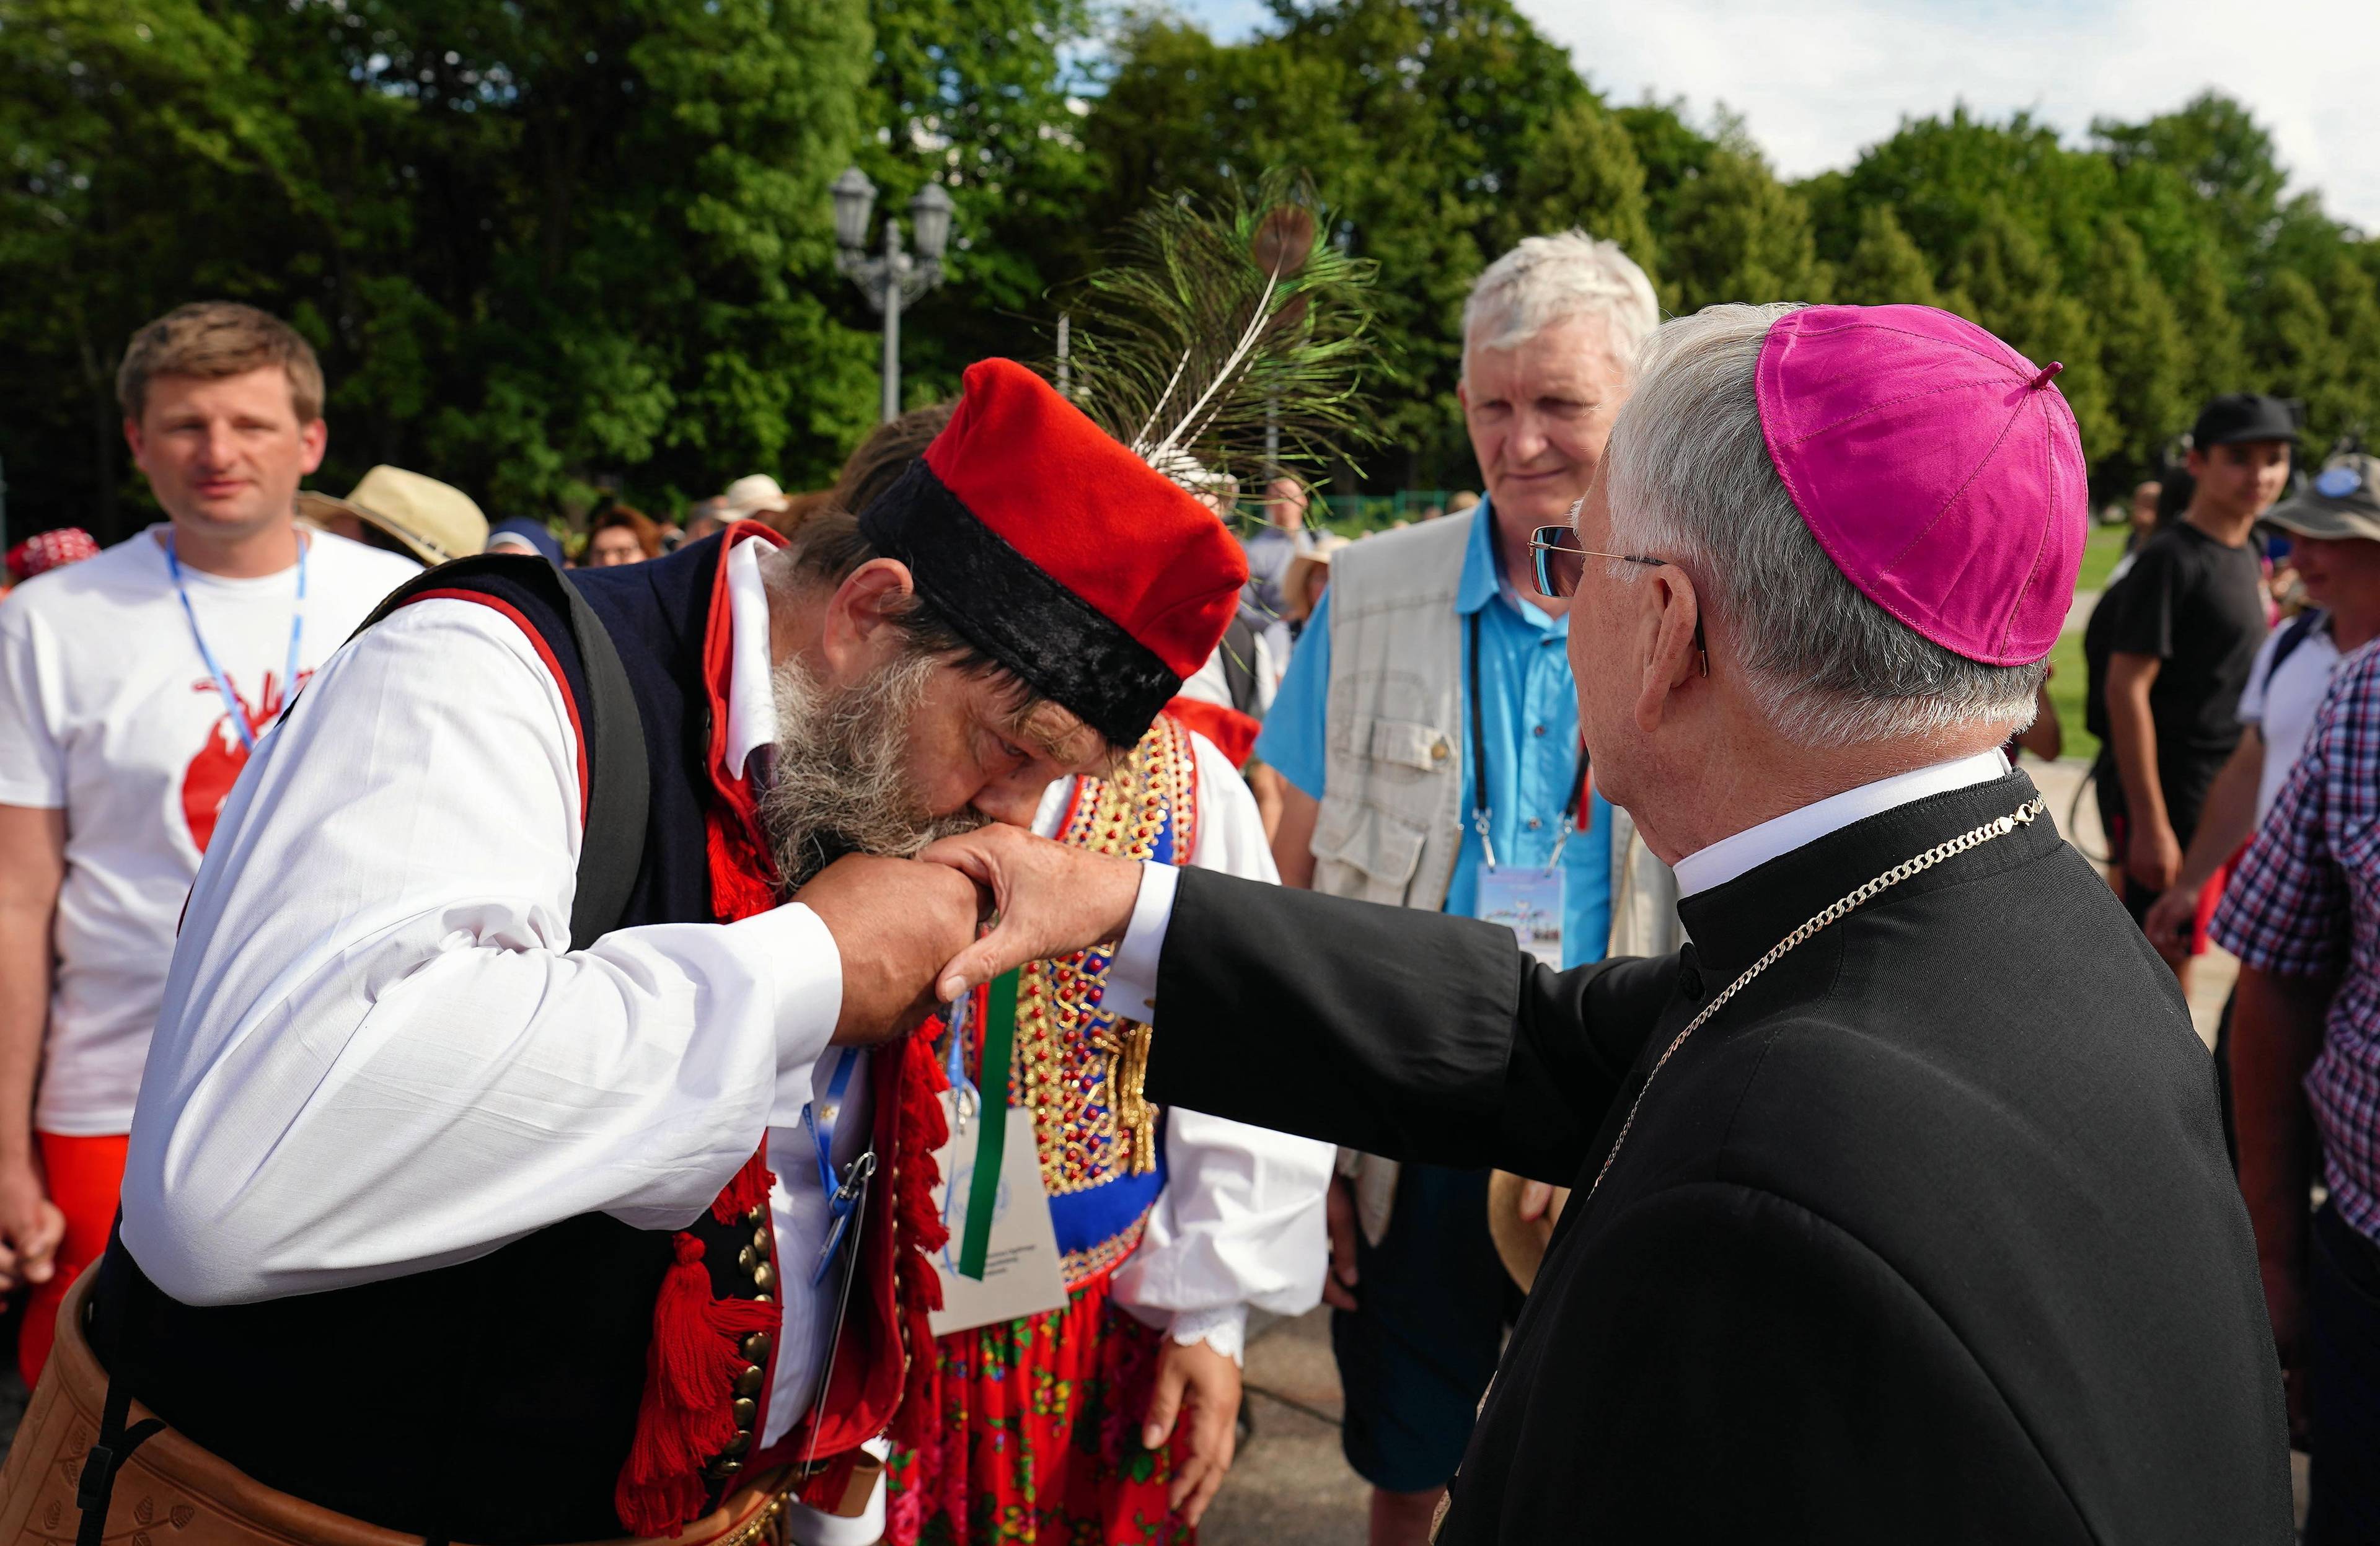 mężczyzna w krakowskim stroju, z pawim piórem przy czapce całuje w rękę biskupa w czarnej sutannie i purpurowej piusce